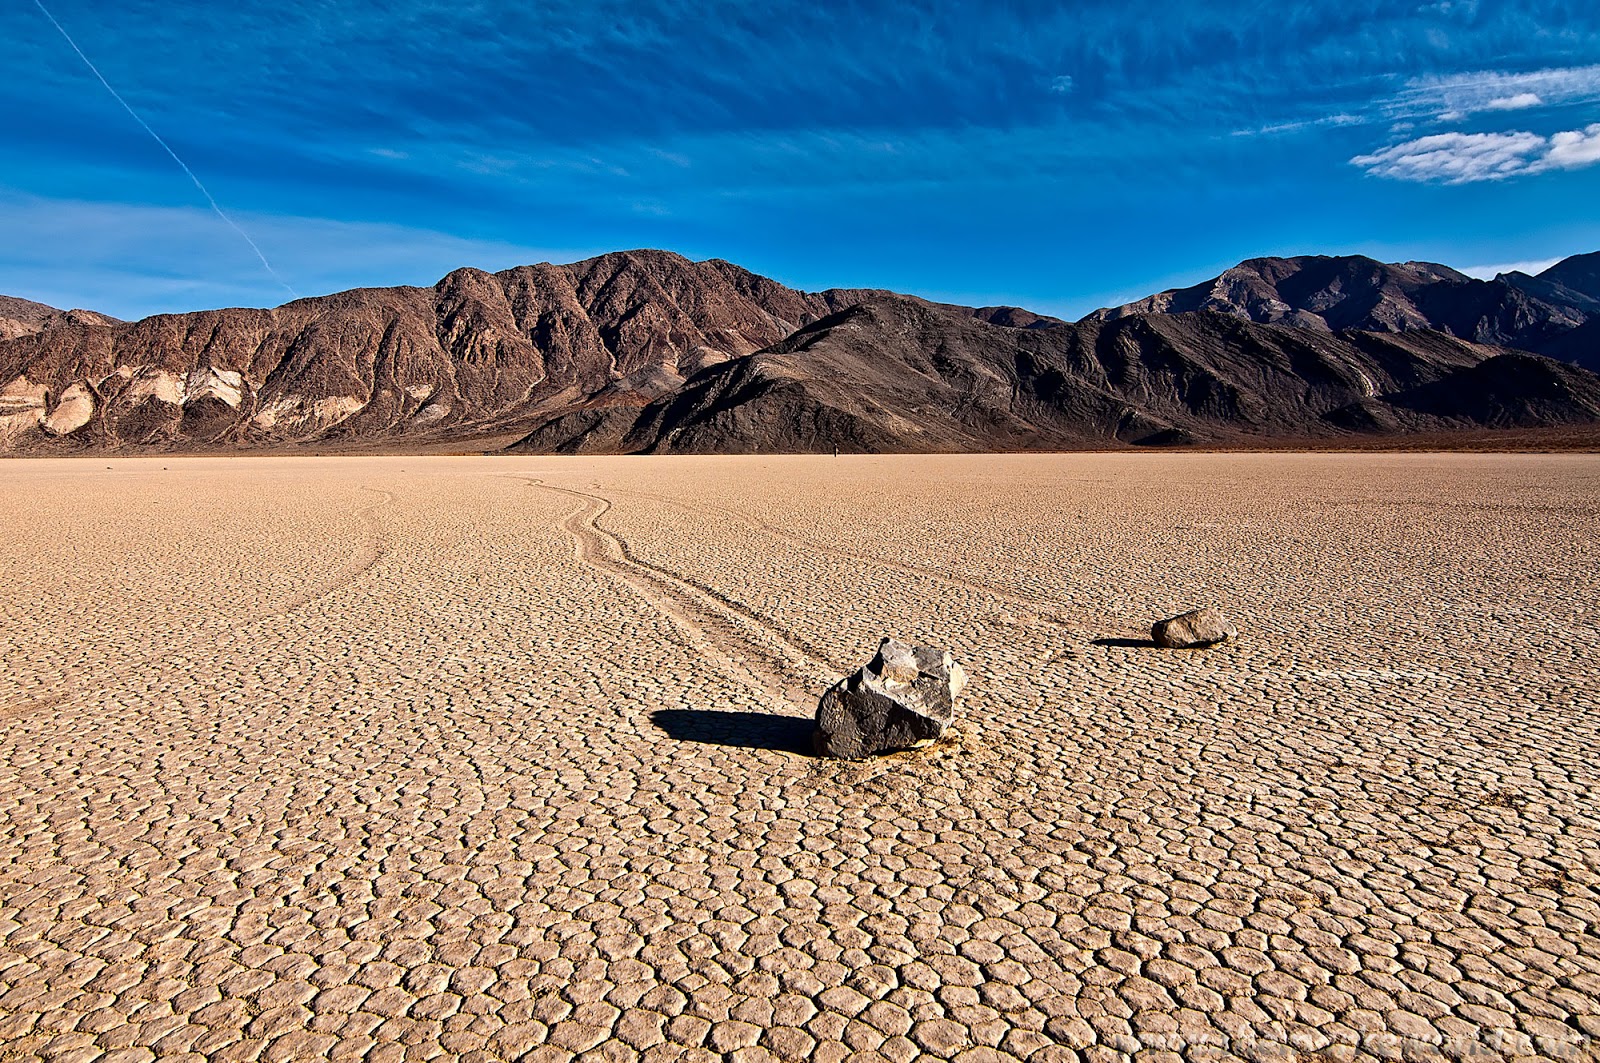 Самая крупная пустыня на земле. Национальный парк Долина смерти в Калифорнии. Пустыня Мохаве Долина смерти. Национальный парк Долины смерти, Калифорния.. Долина смерти (Калифорния - Невада).